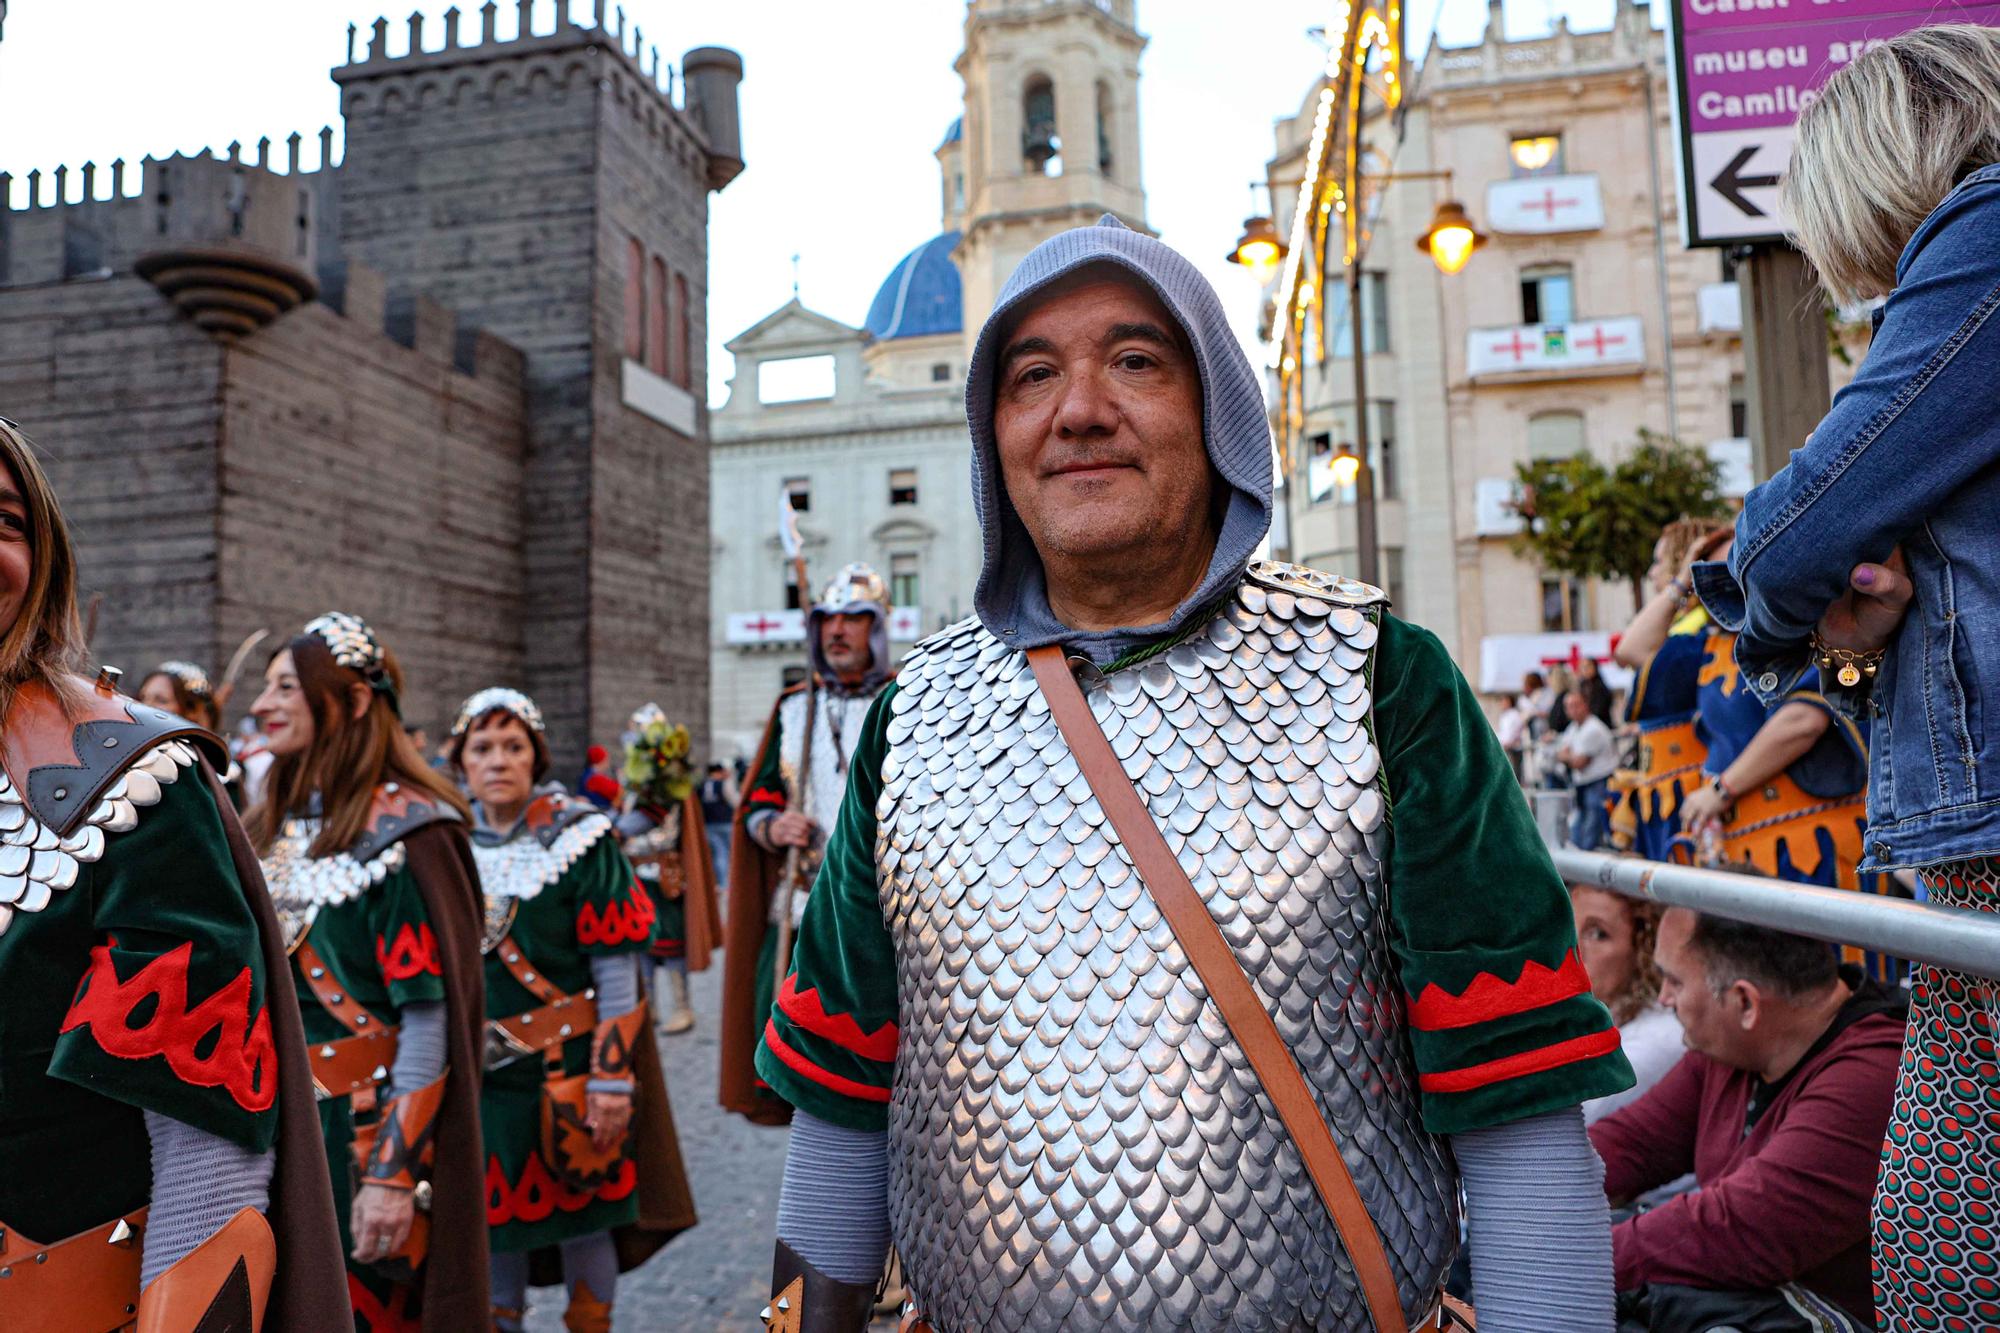 La solemne procesión marca el ecuador de la Trilogía en Alcoy